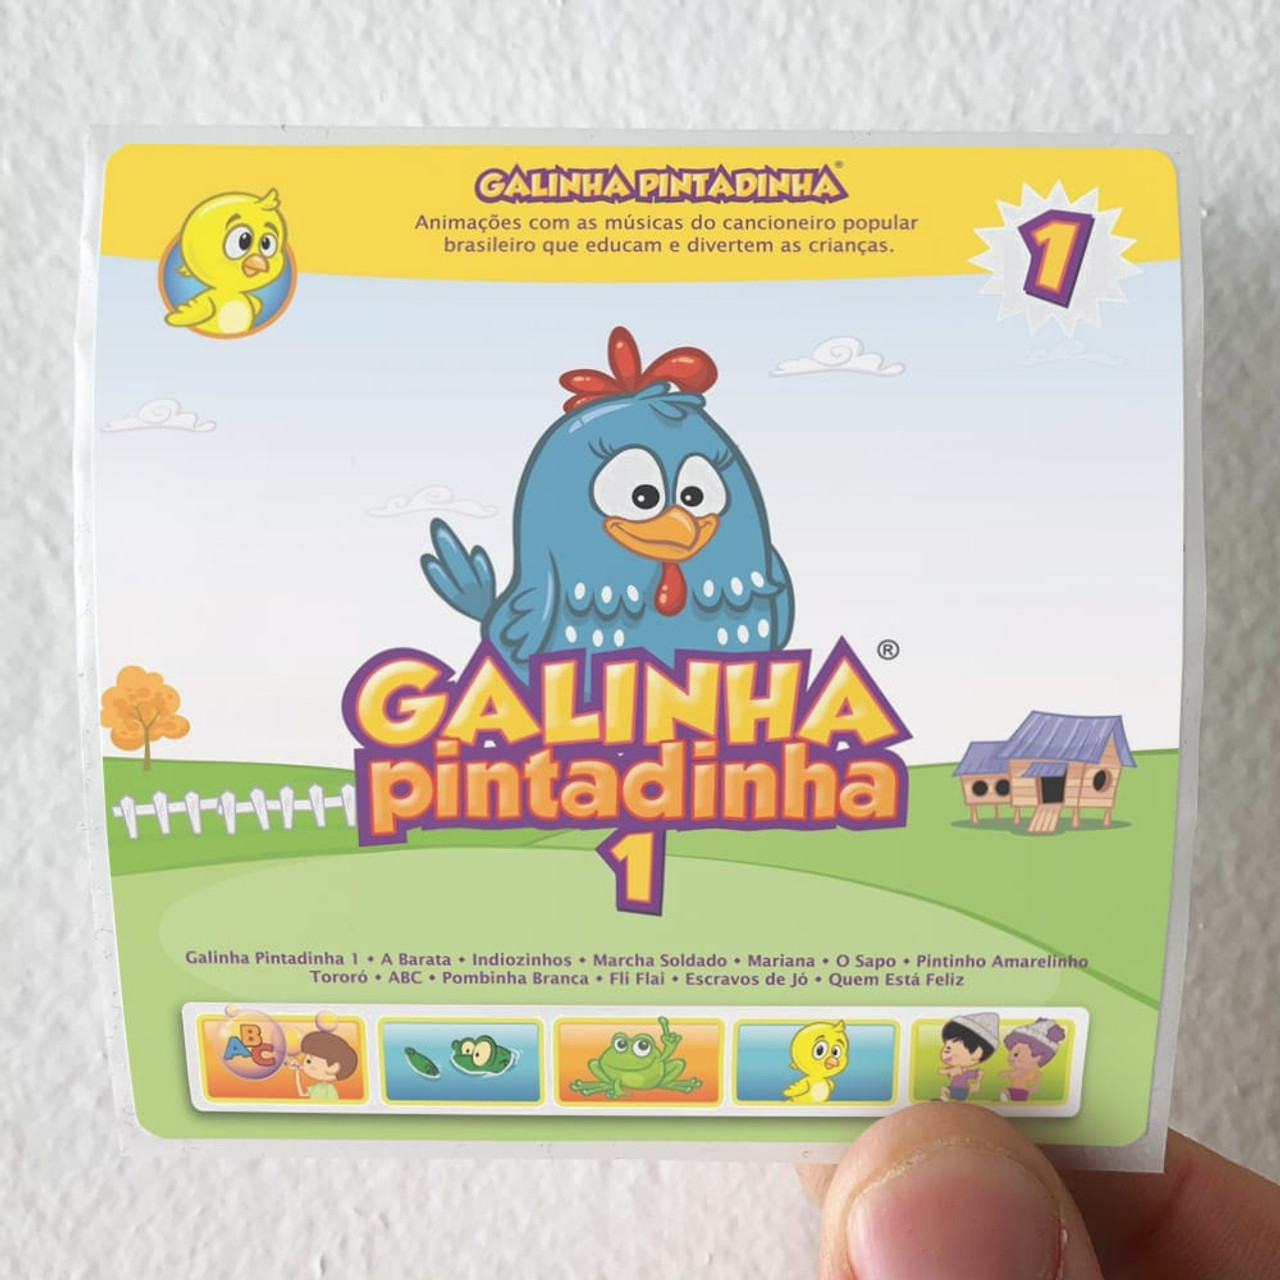 Pintinho Amarelinho - Galinha Pintadinha 1 - OFICIAL 